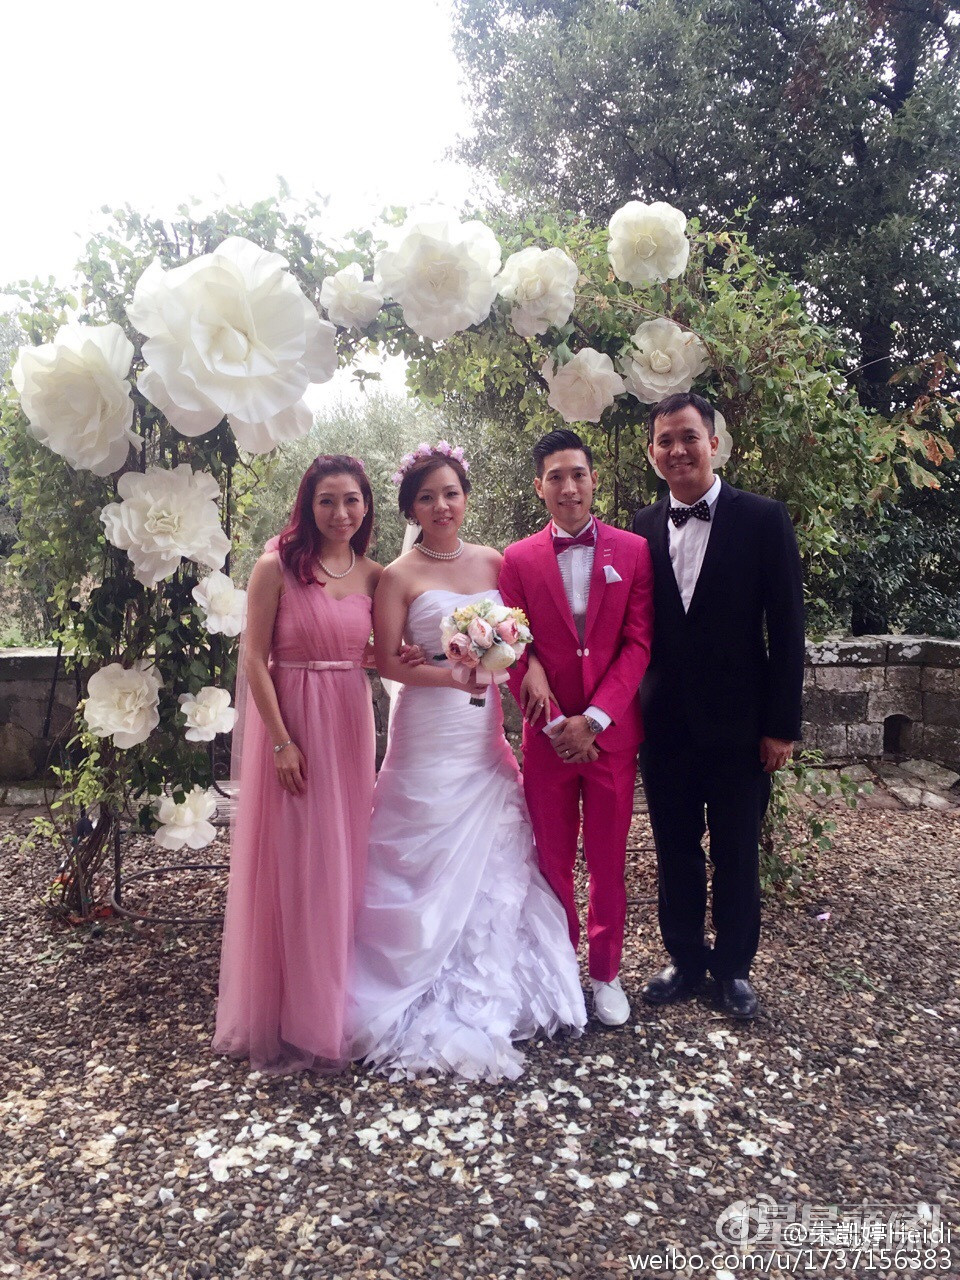 戚黛黛2016年與機師老公Calvin Yeung結婚。